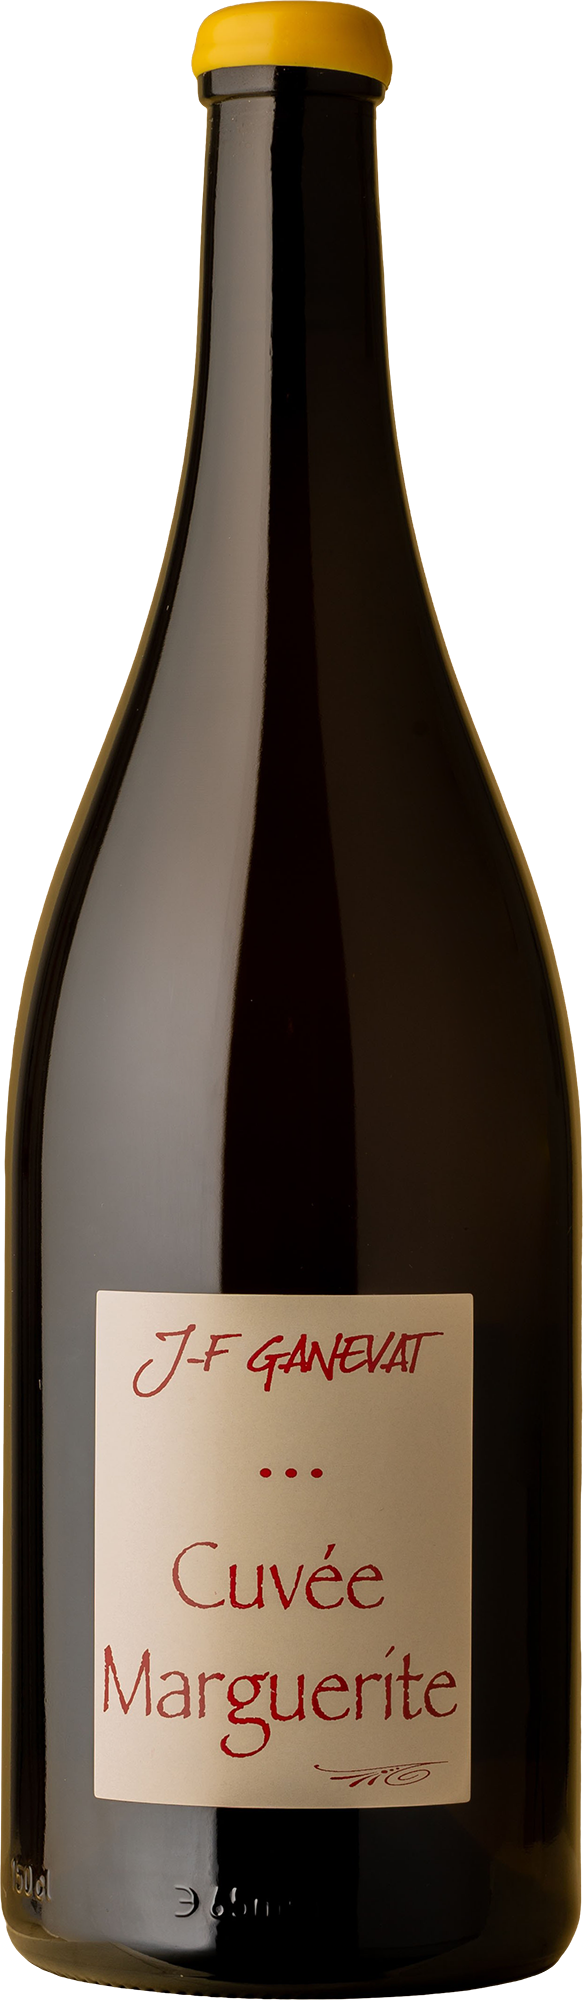 Jean-François Ganevat - Marguerite VV Chardonnay MAGNUM 2018 1500mL White Wine